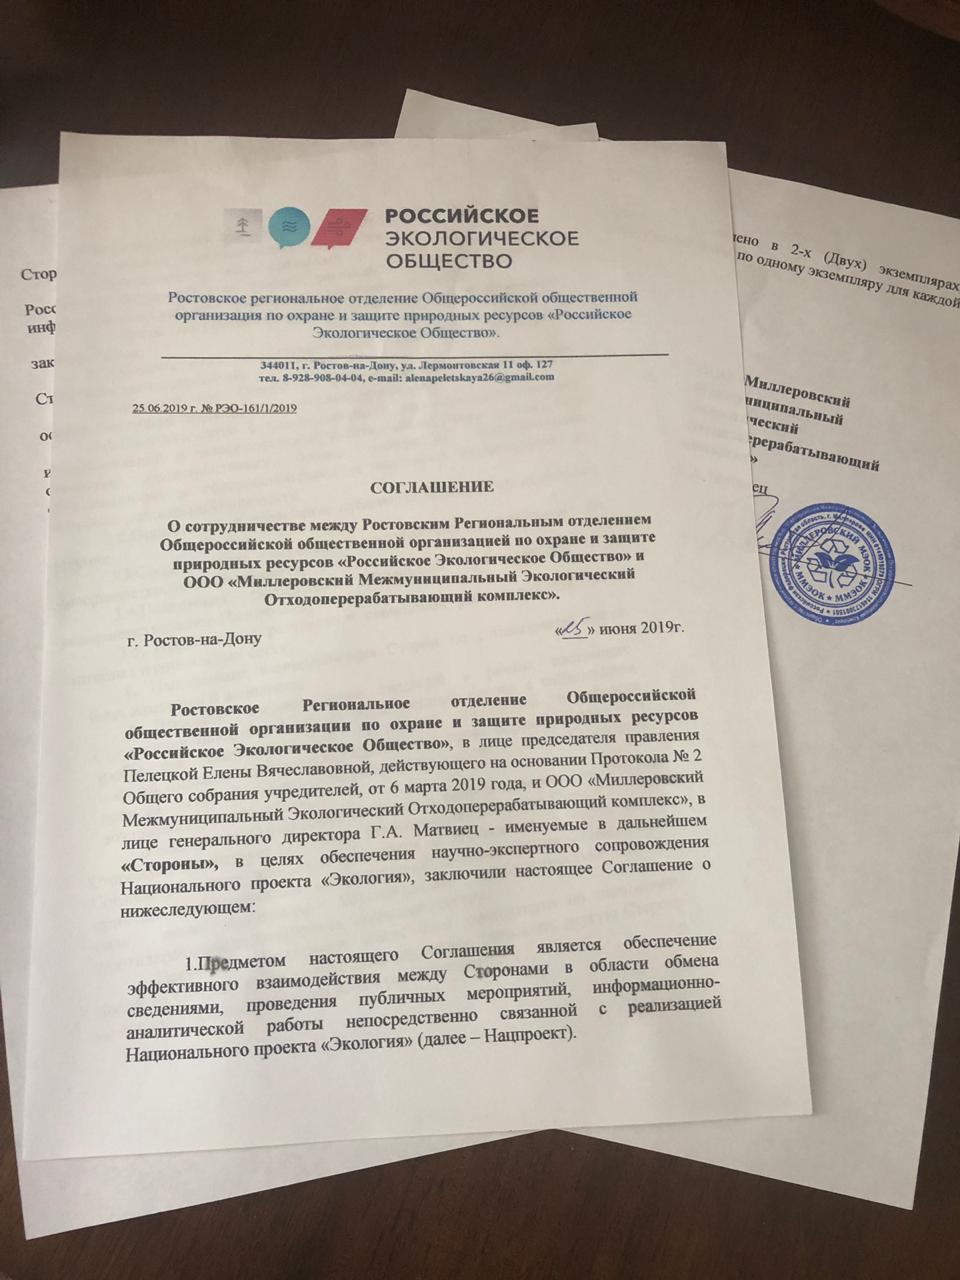 Соглашение о сотрудничестве между Региональным отделением Российского экологического общества и руководством Миллеровского МЭОКа